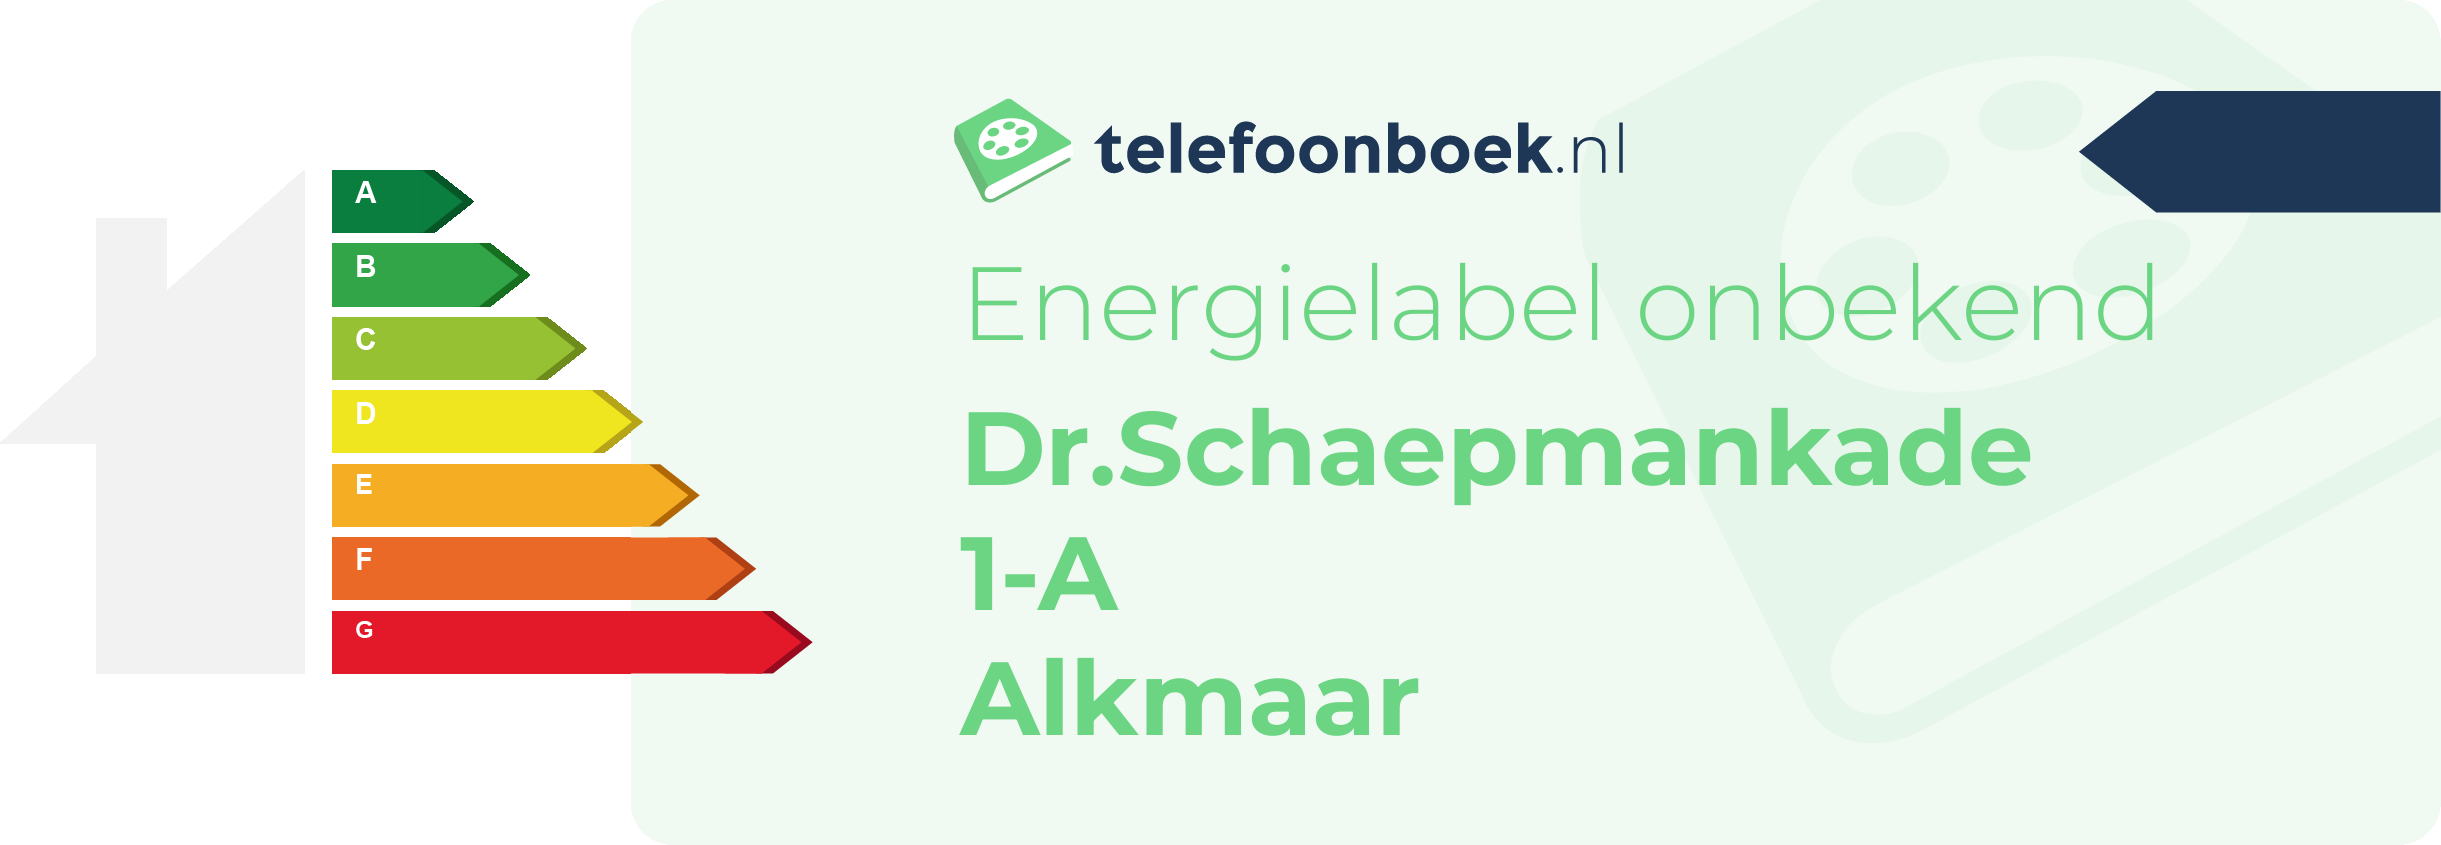 Energielabel Dr.Schaepmankade 1-A Alkmaar